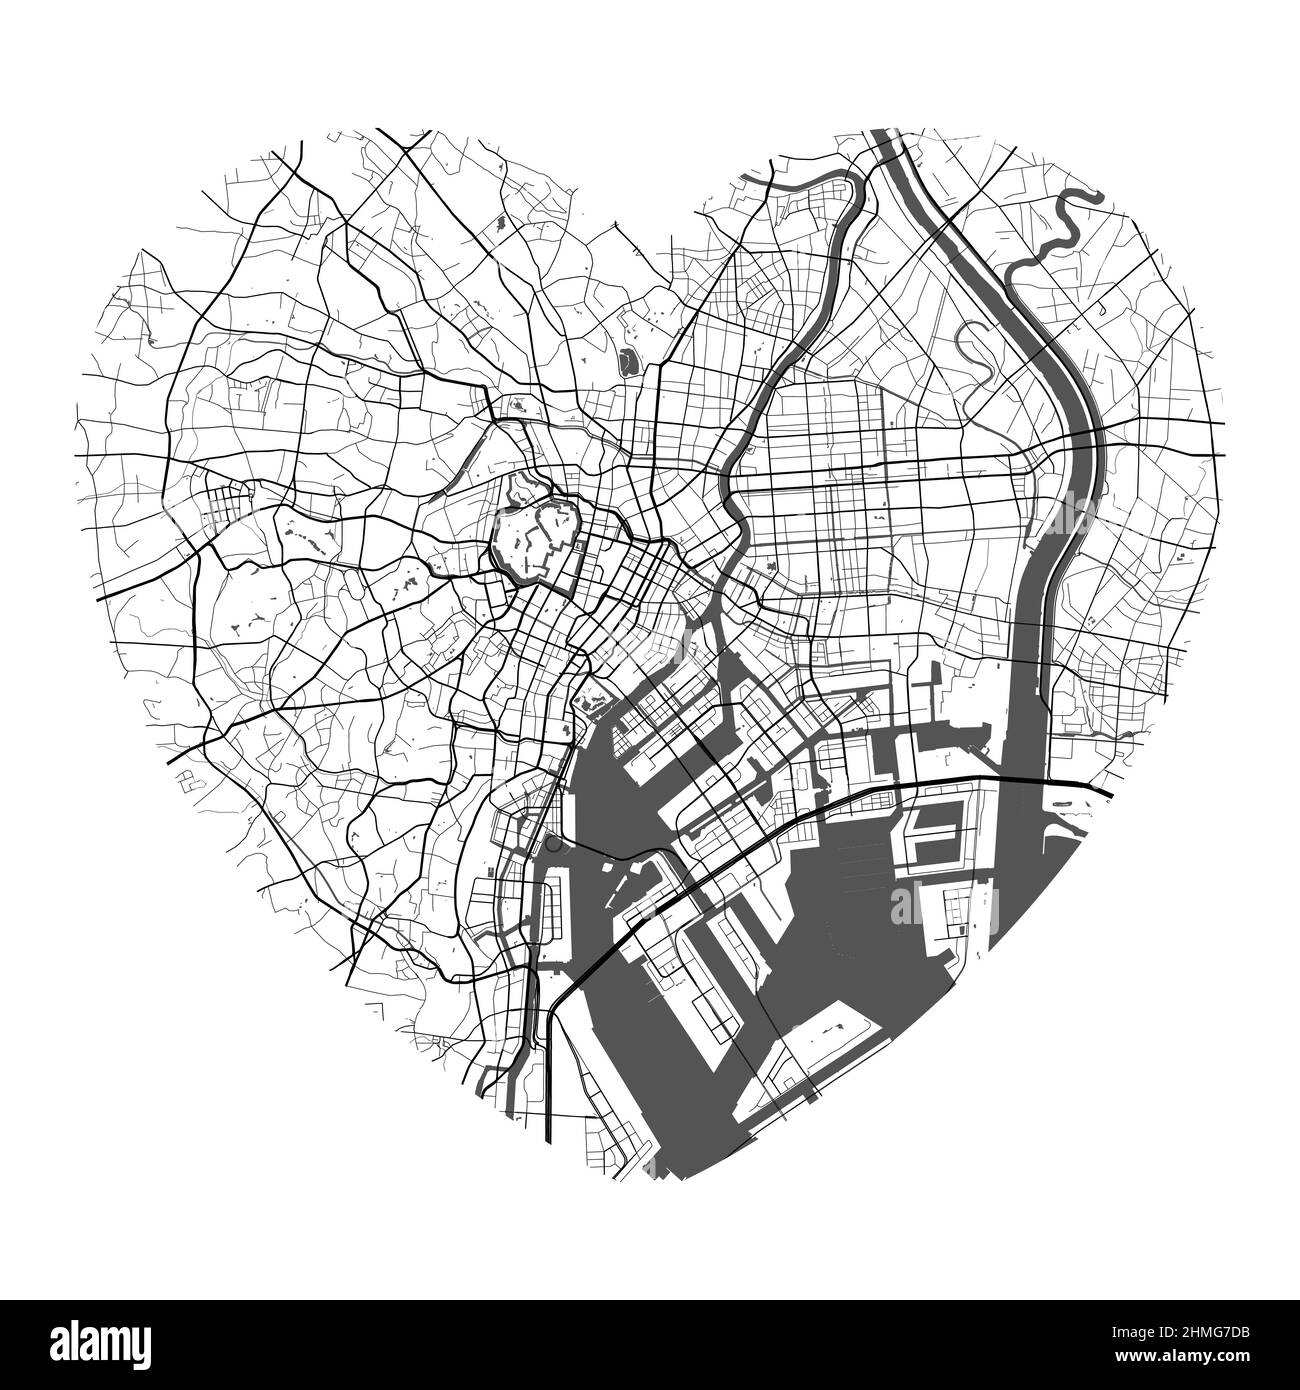 Mappa vettoriale della città di Tokyo a forma di cuore. Illustrazione dei colori bianco e nero. Strade, strade, fiumi. Illustrazione Vettoriale